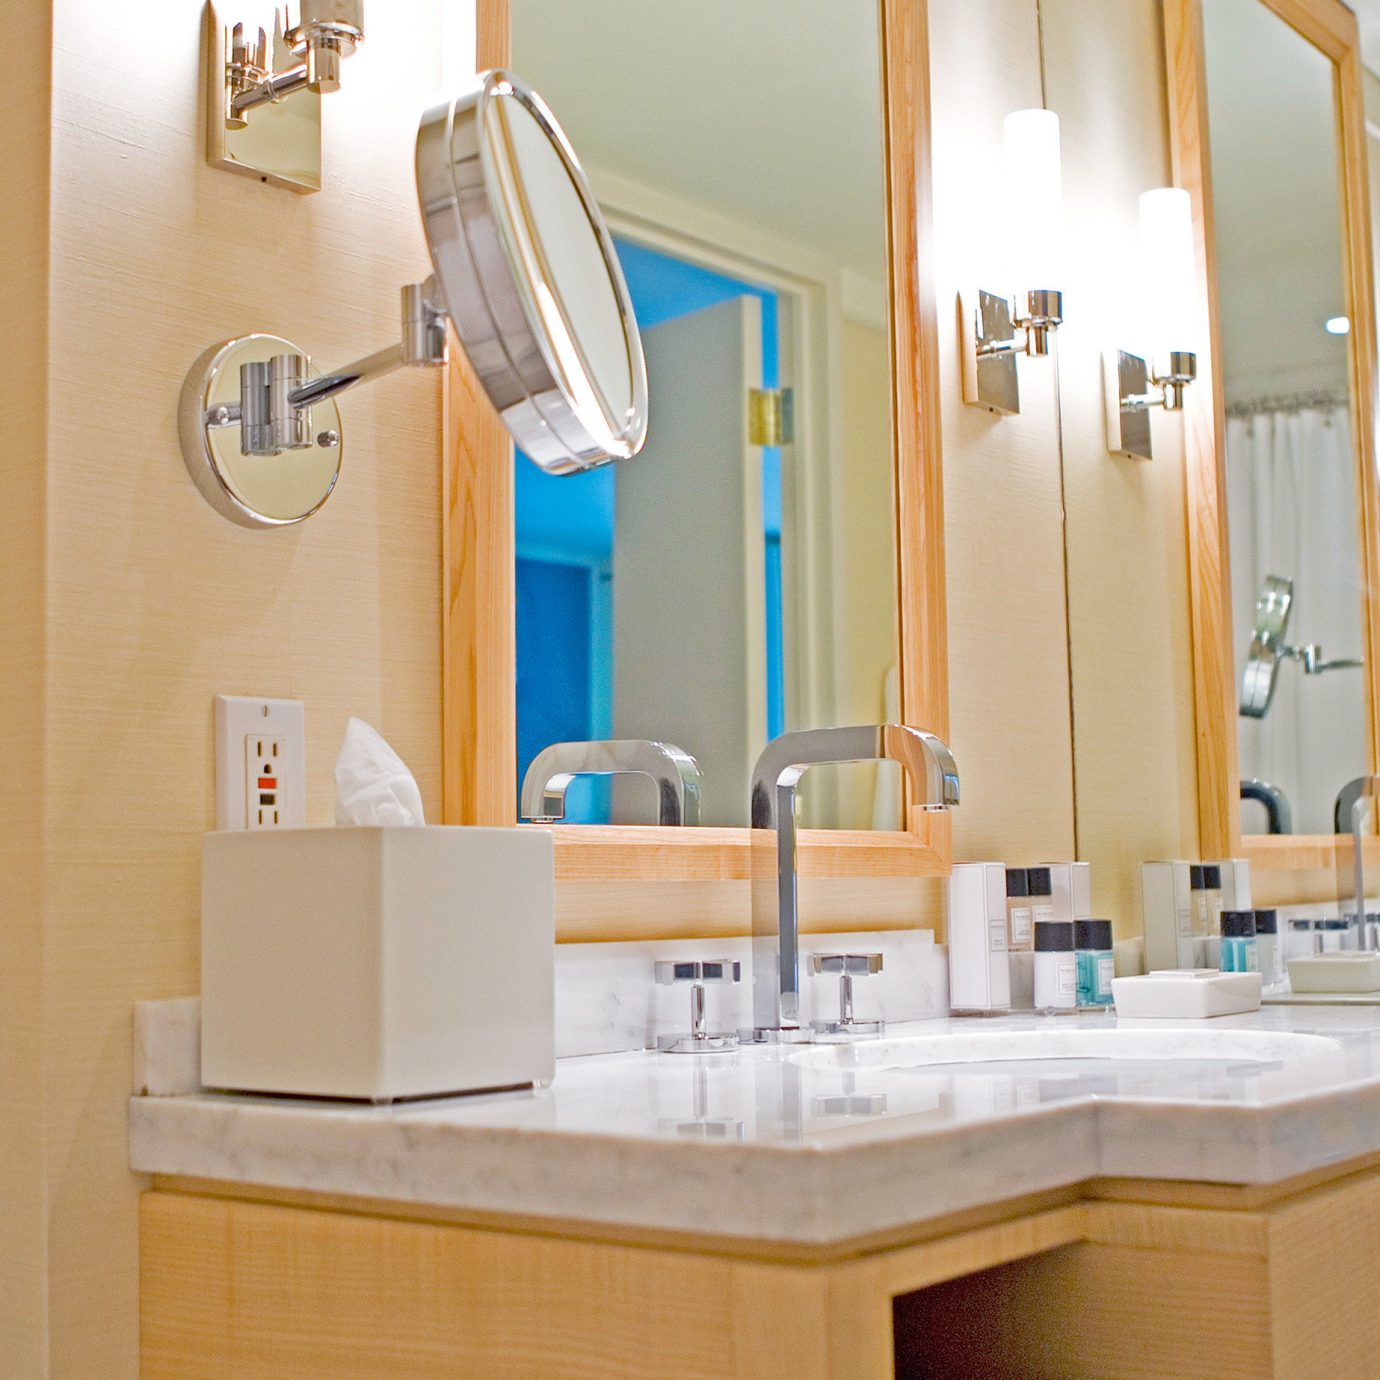 Bath City bathroom mirror property sink home cottage towel tub bathtub